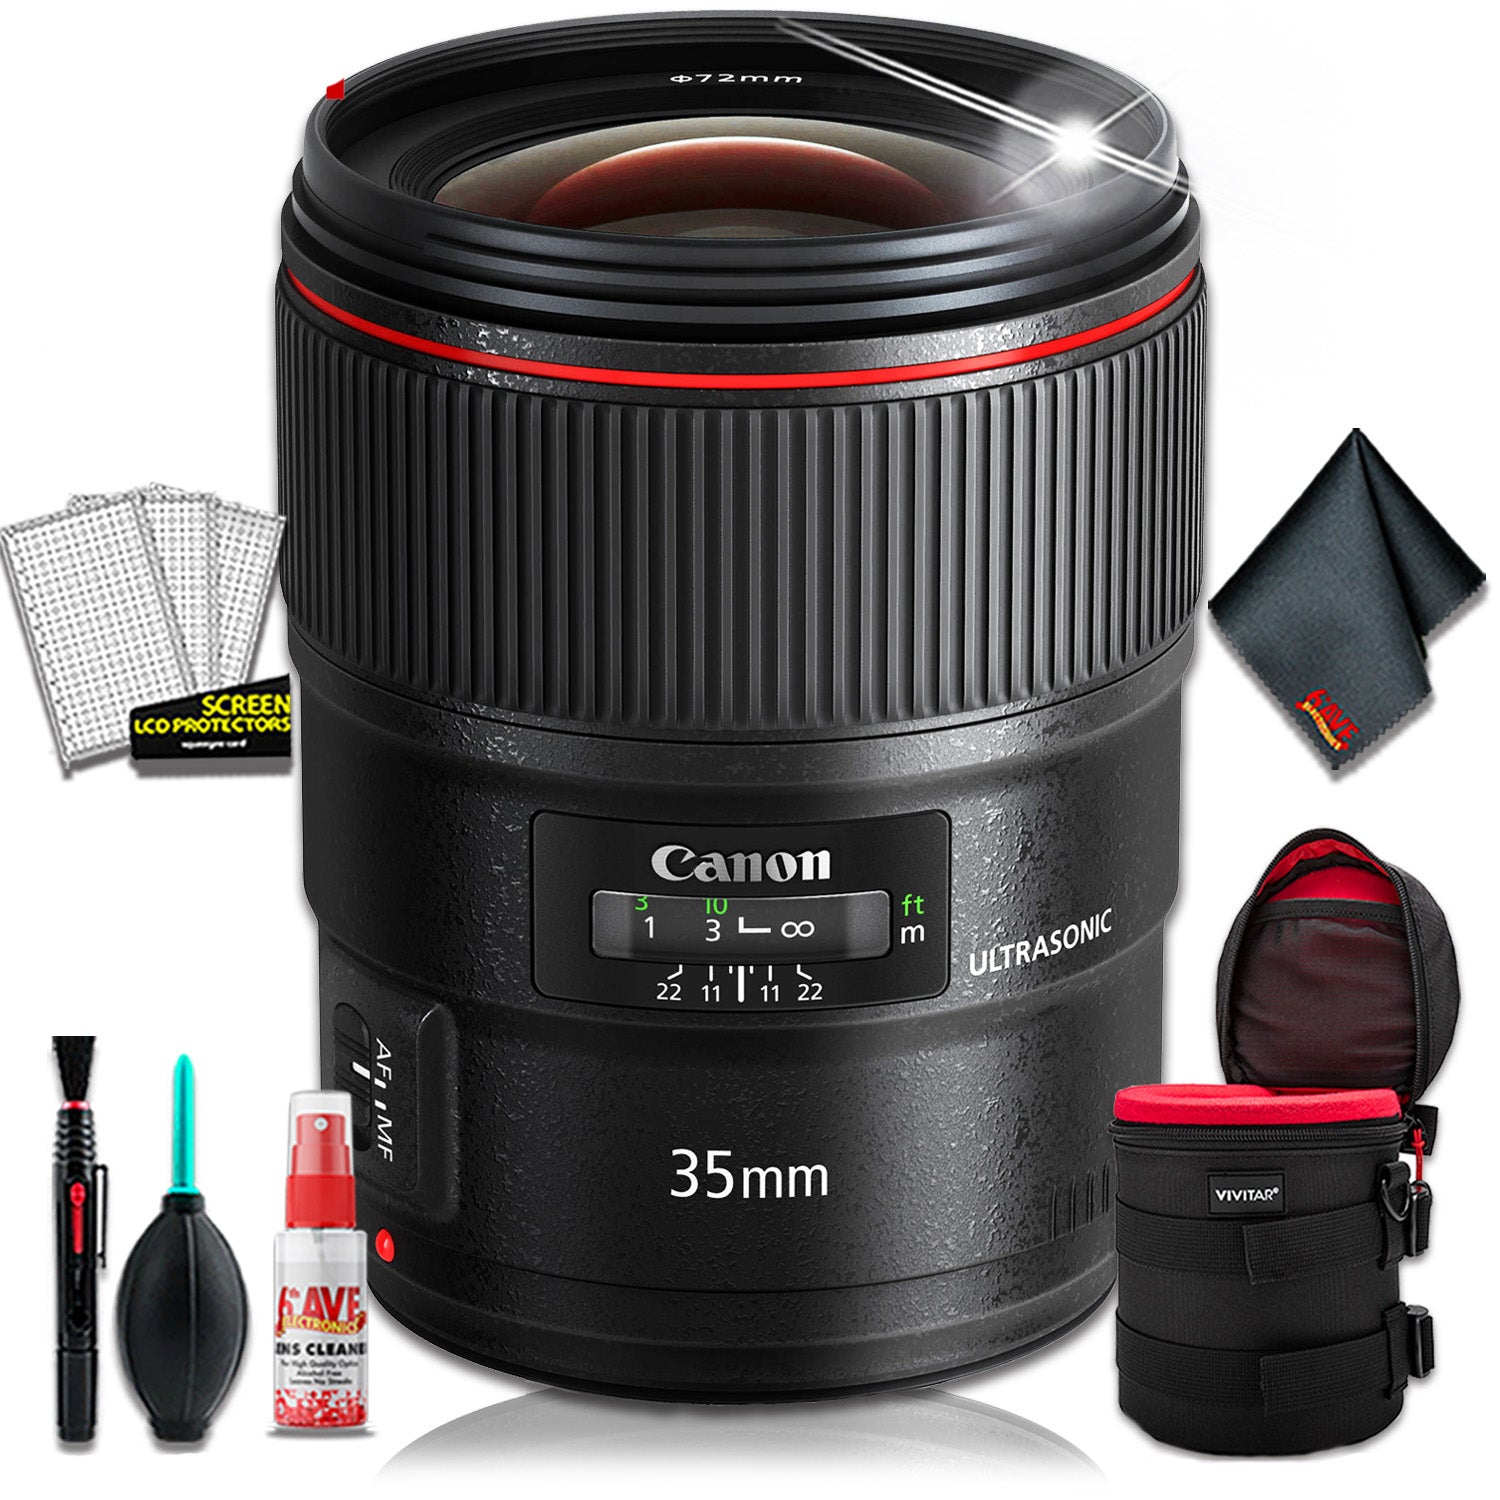 Canon EF 35mm f/1.4L II USM Lens (Intl Model) + 4.5 inch Lens Case + Cleaning Kit